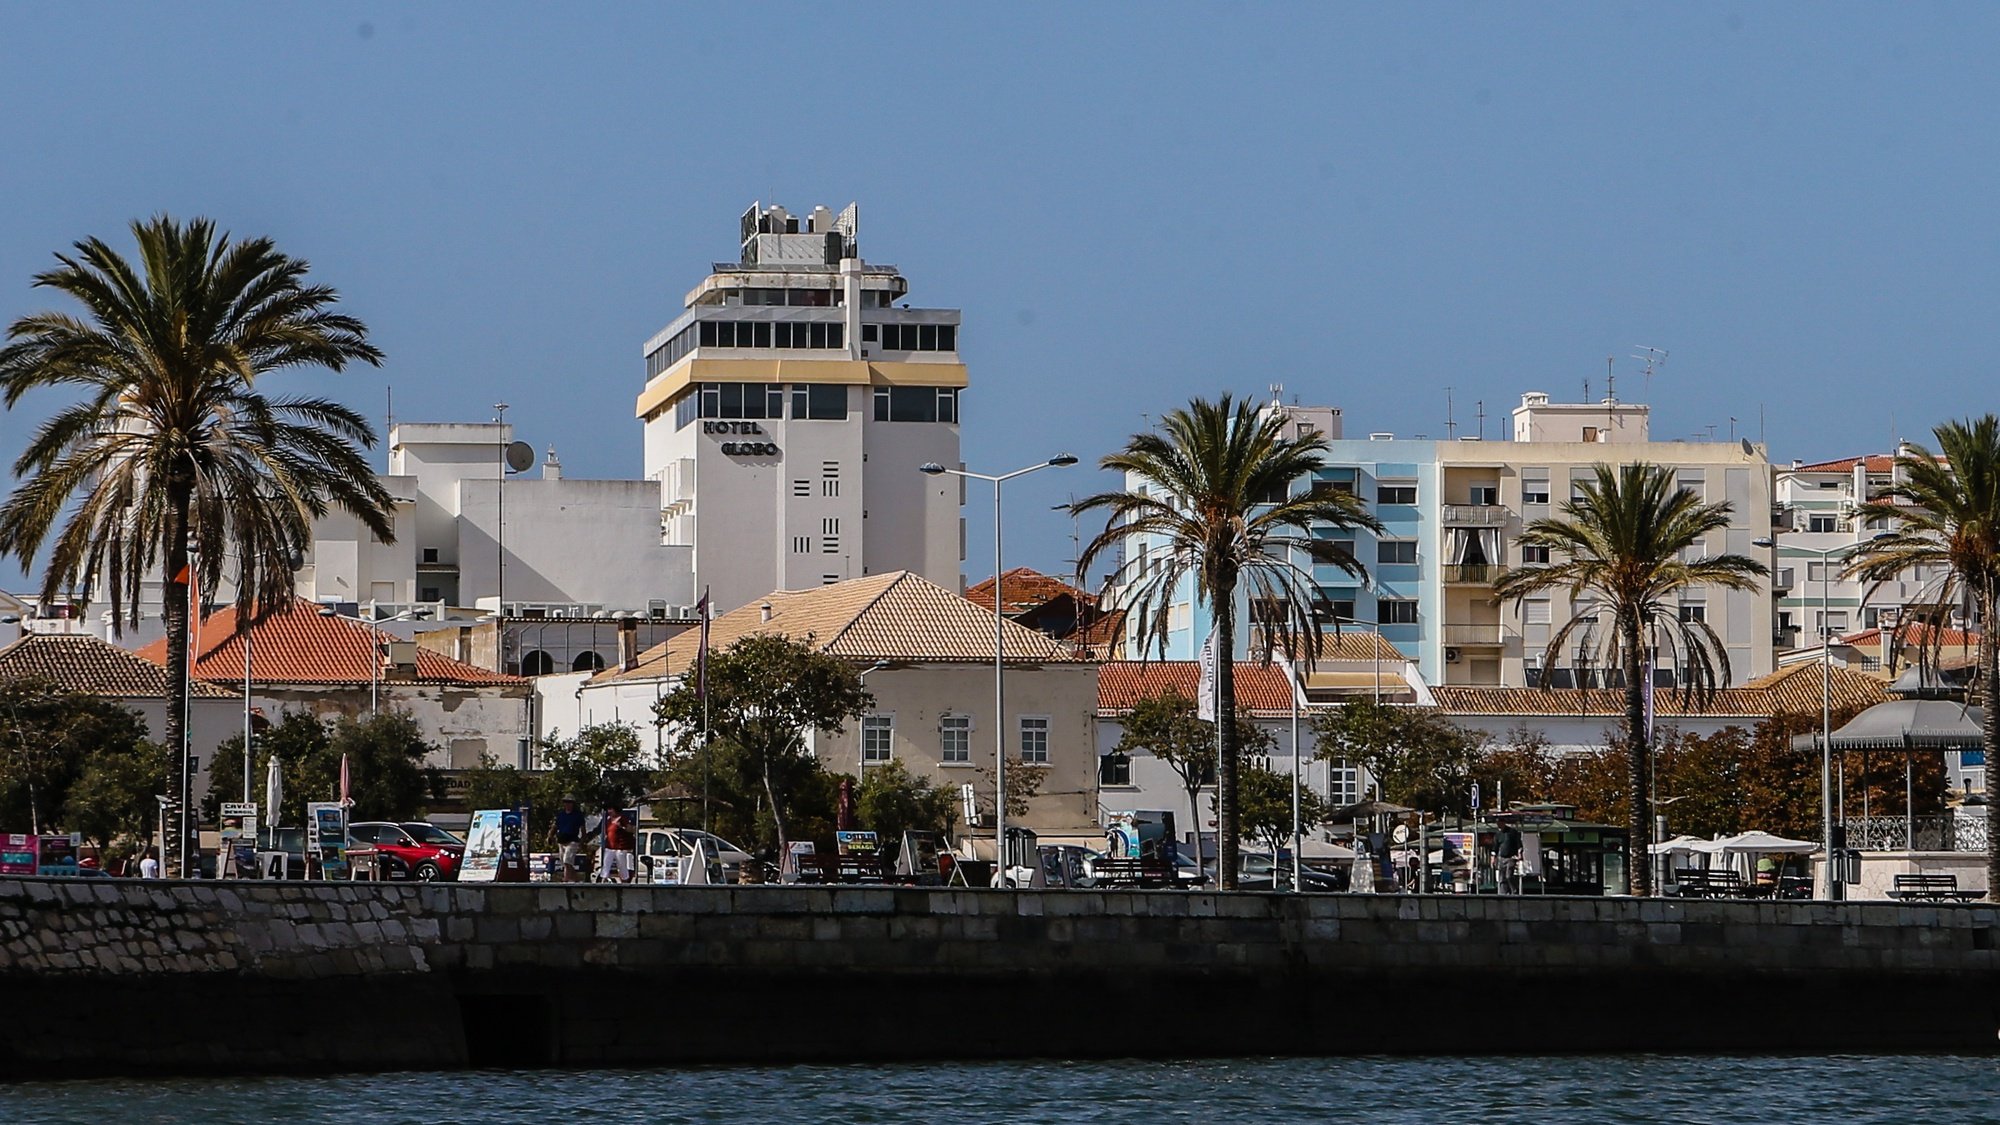 Vista de um barco da cidade de Portimão, 27 de setembro de 2017. LUÍS FORRA/LUSA